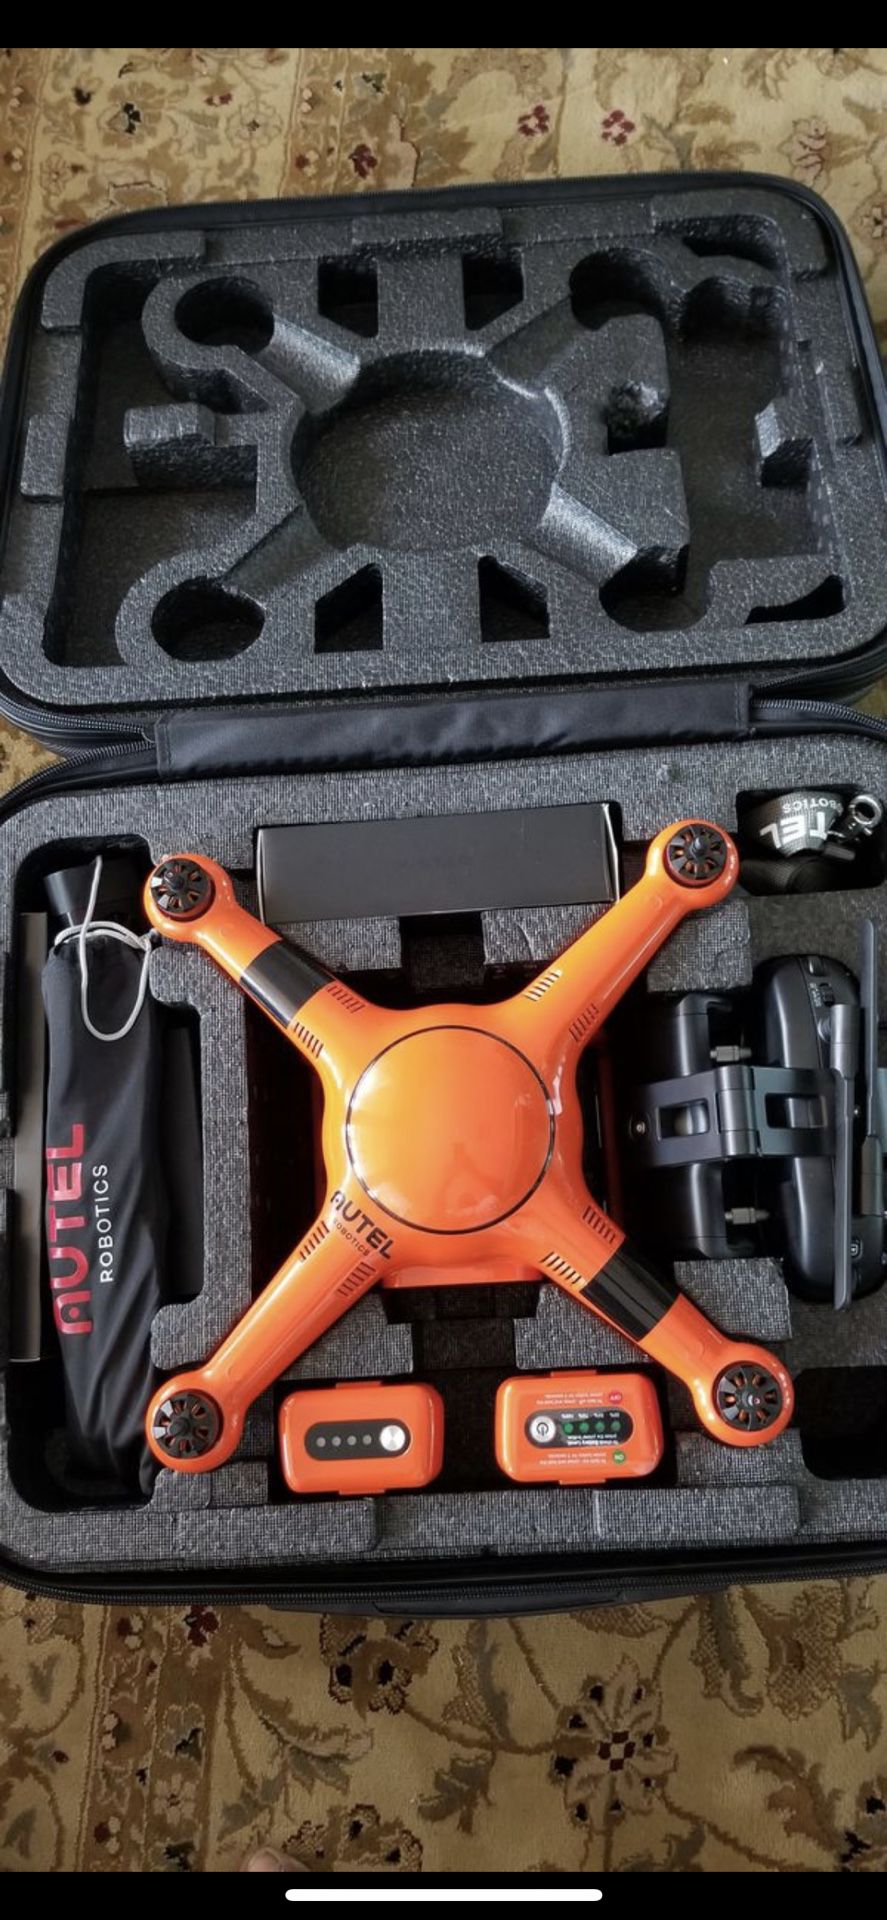 Xstar premium drone